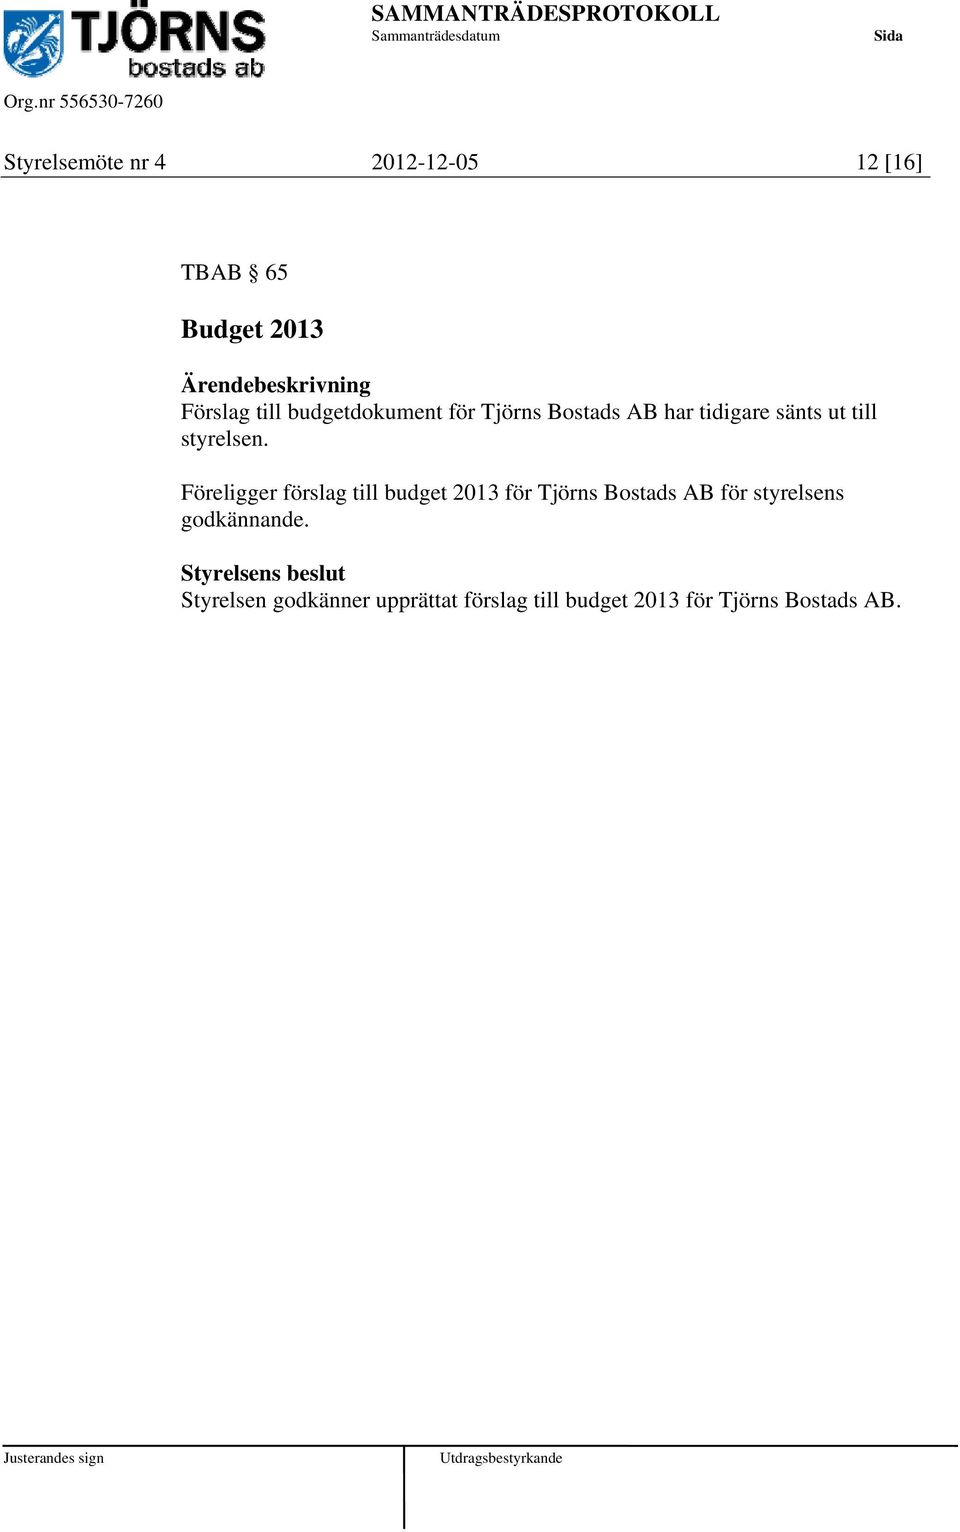 Föreligger förslag till budget 2013 för Tjörns Bostads AB för styrelsens